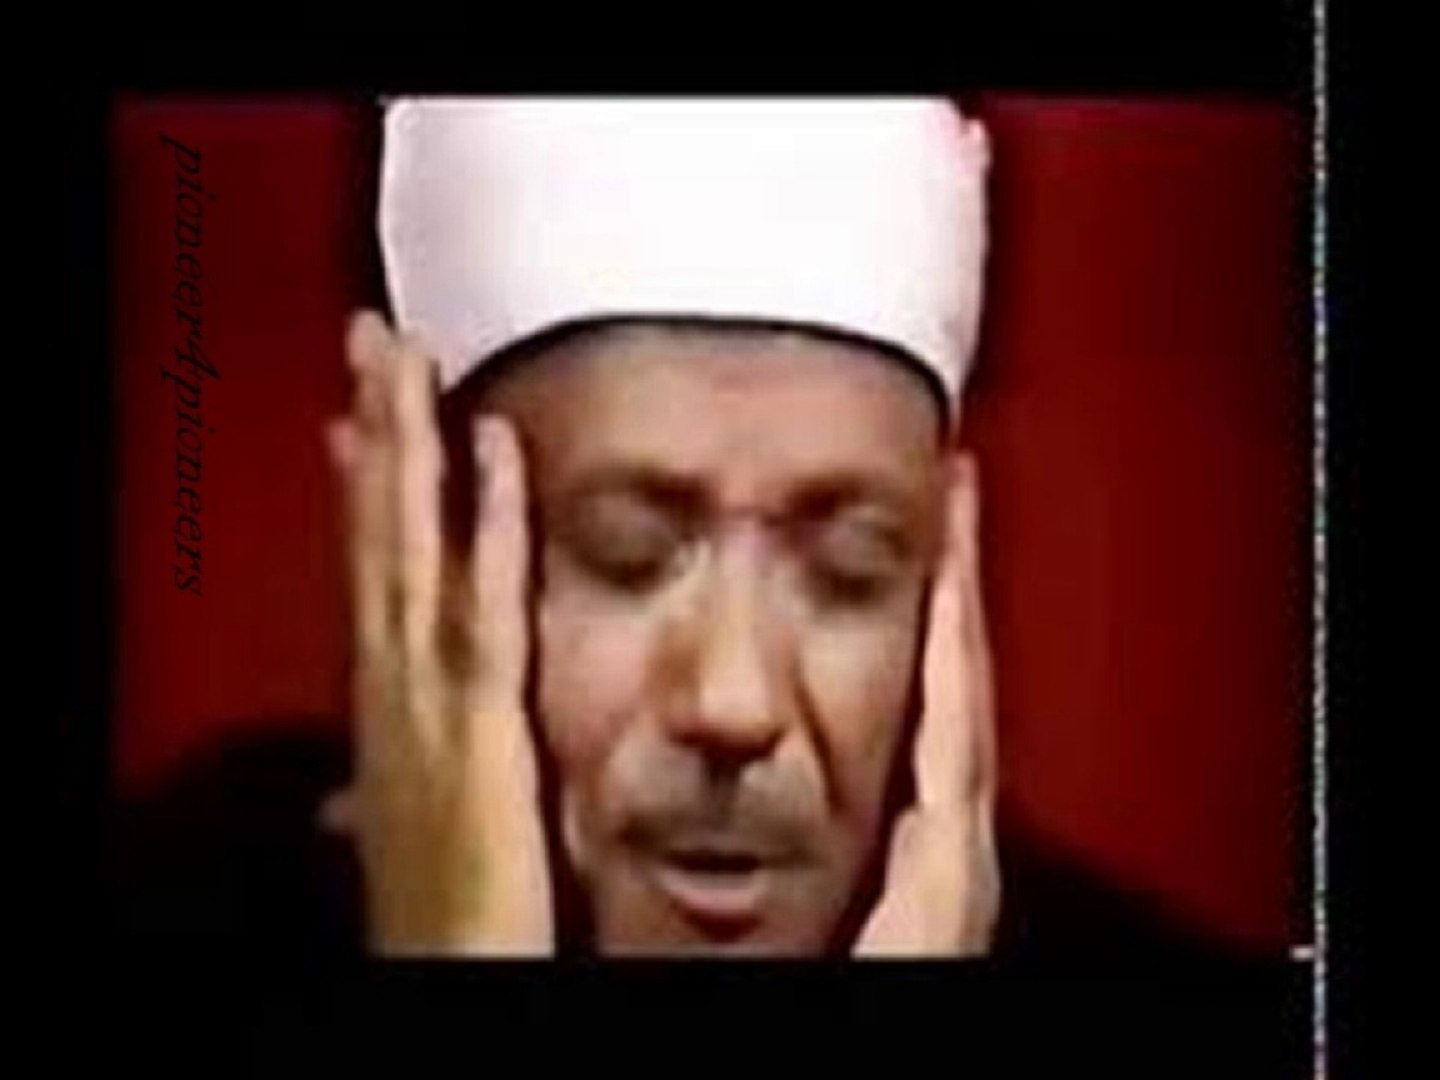 اروع ما مجود عبد الباسط عبد الصمد قصار السور - video Dailymotion